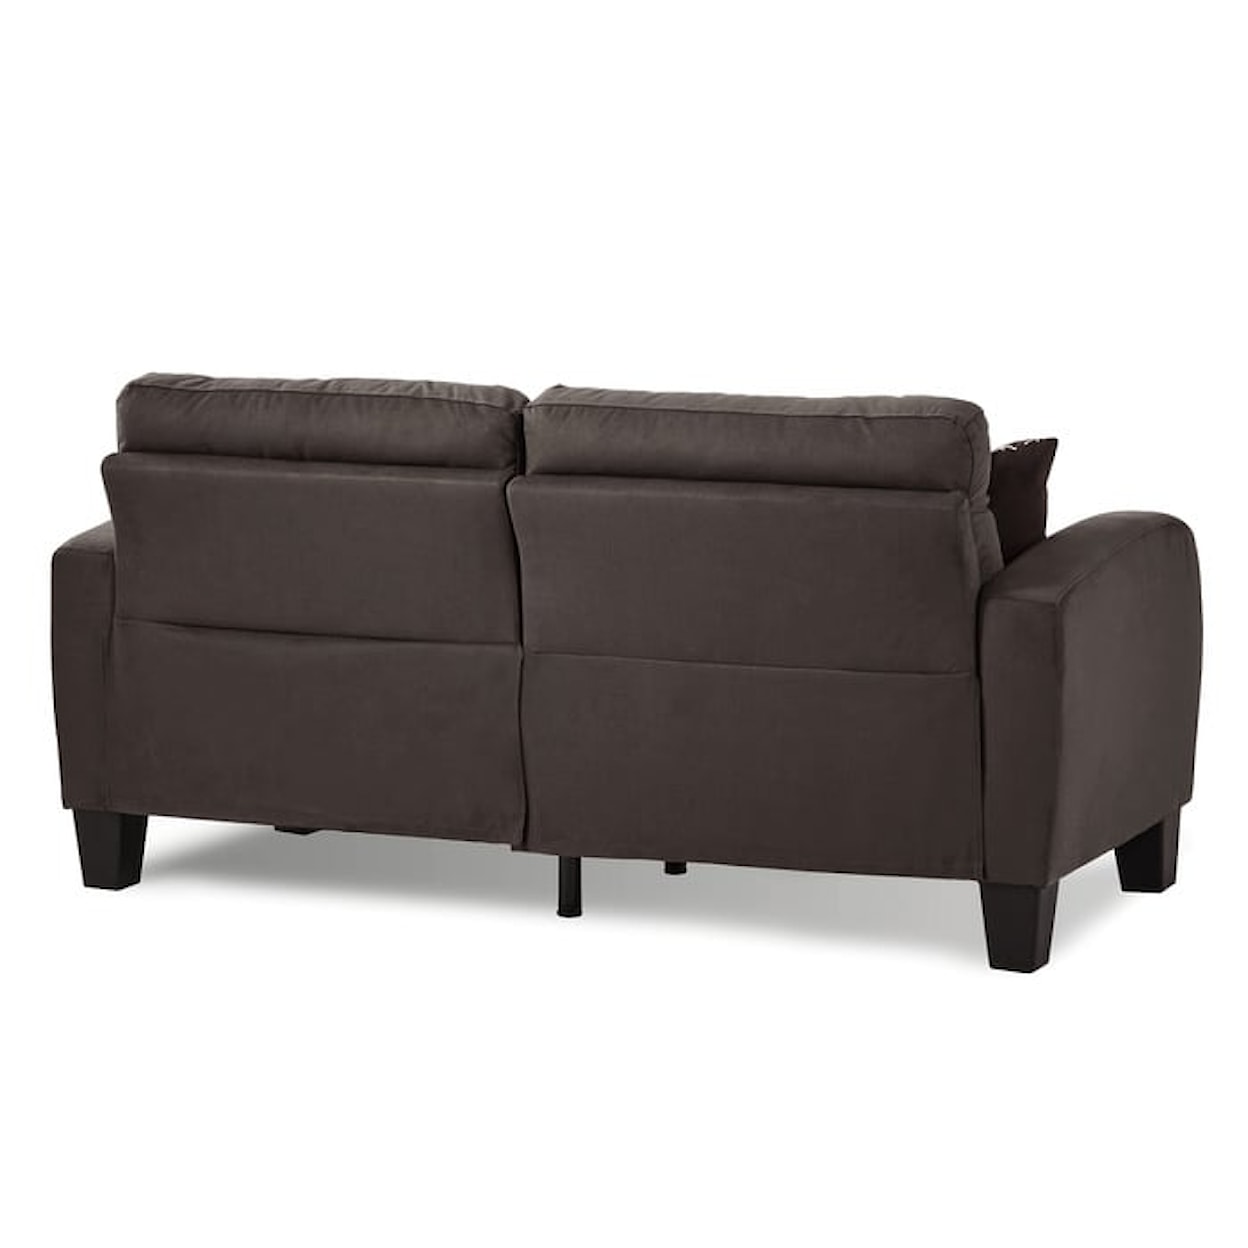 Homelegance Furniture Sinclair Sofa